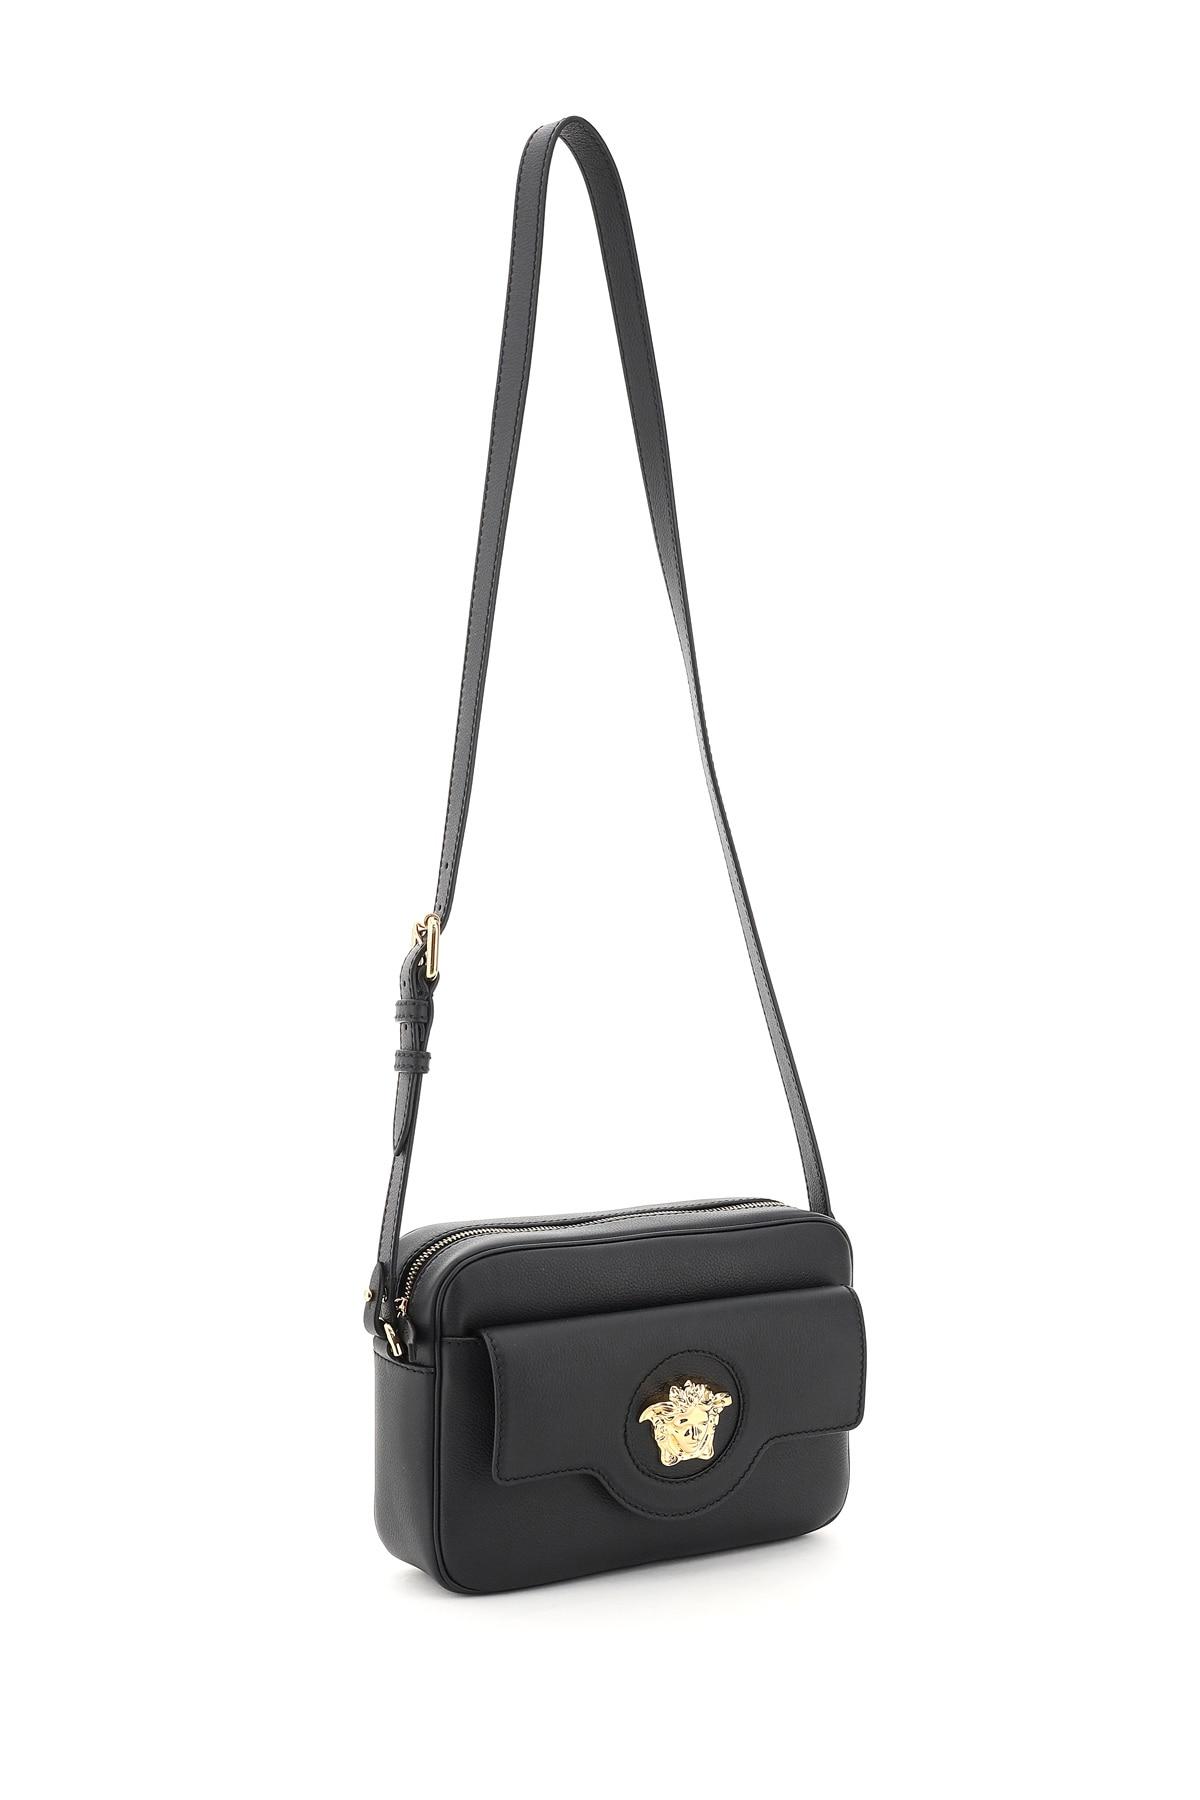 Versace Leather Camera Bag La Medusa in Black Gold (Black) - Lyst